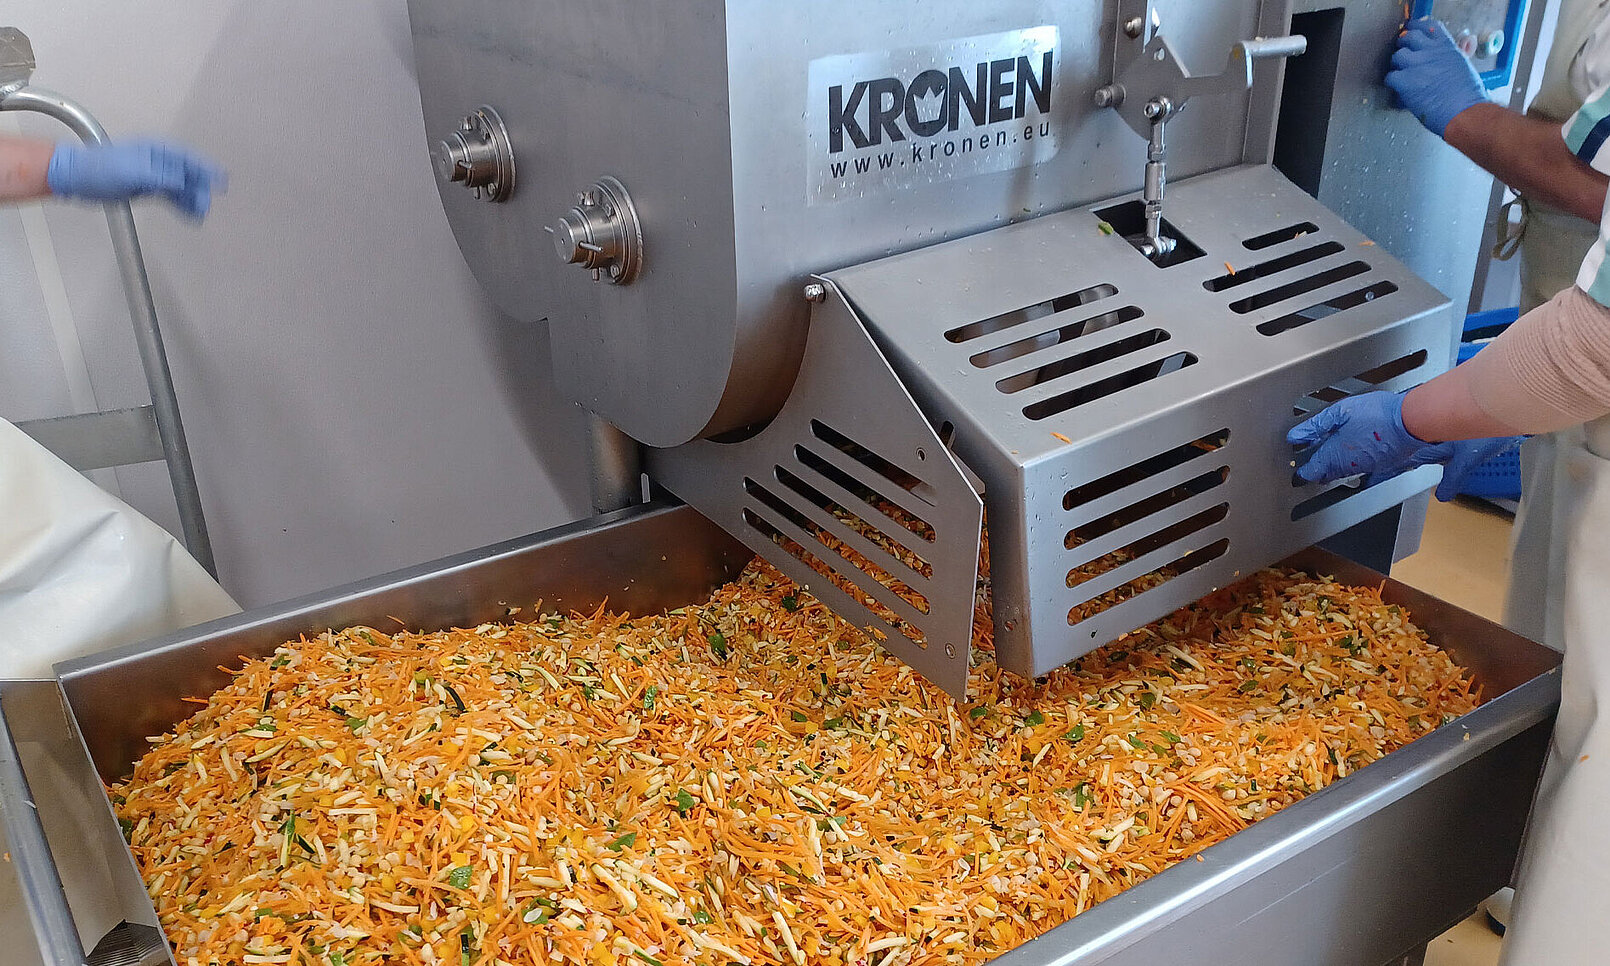 Un client de KRONEN, la société Kuttner, située en Autriche, confectionne un nouveau salad bowl sain